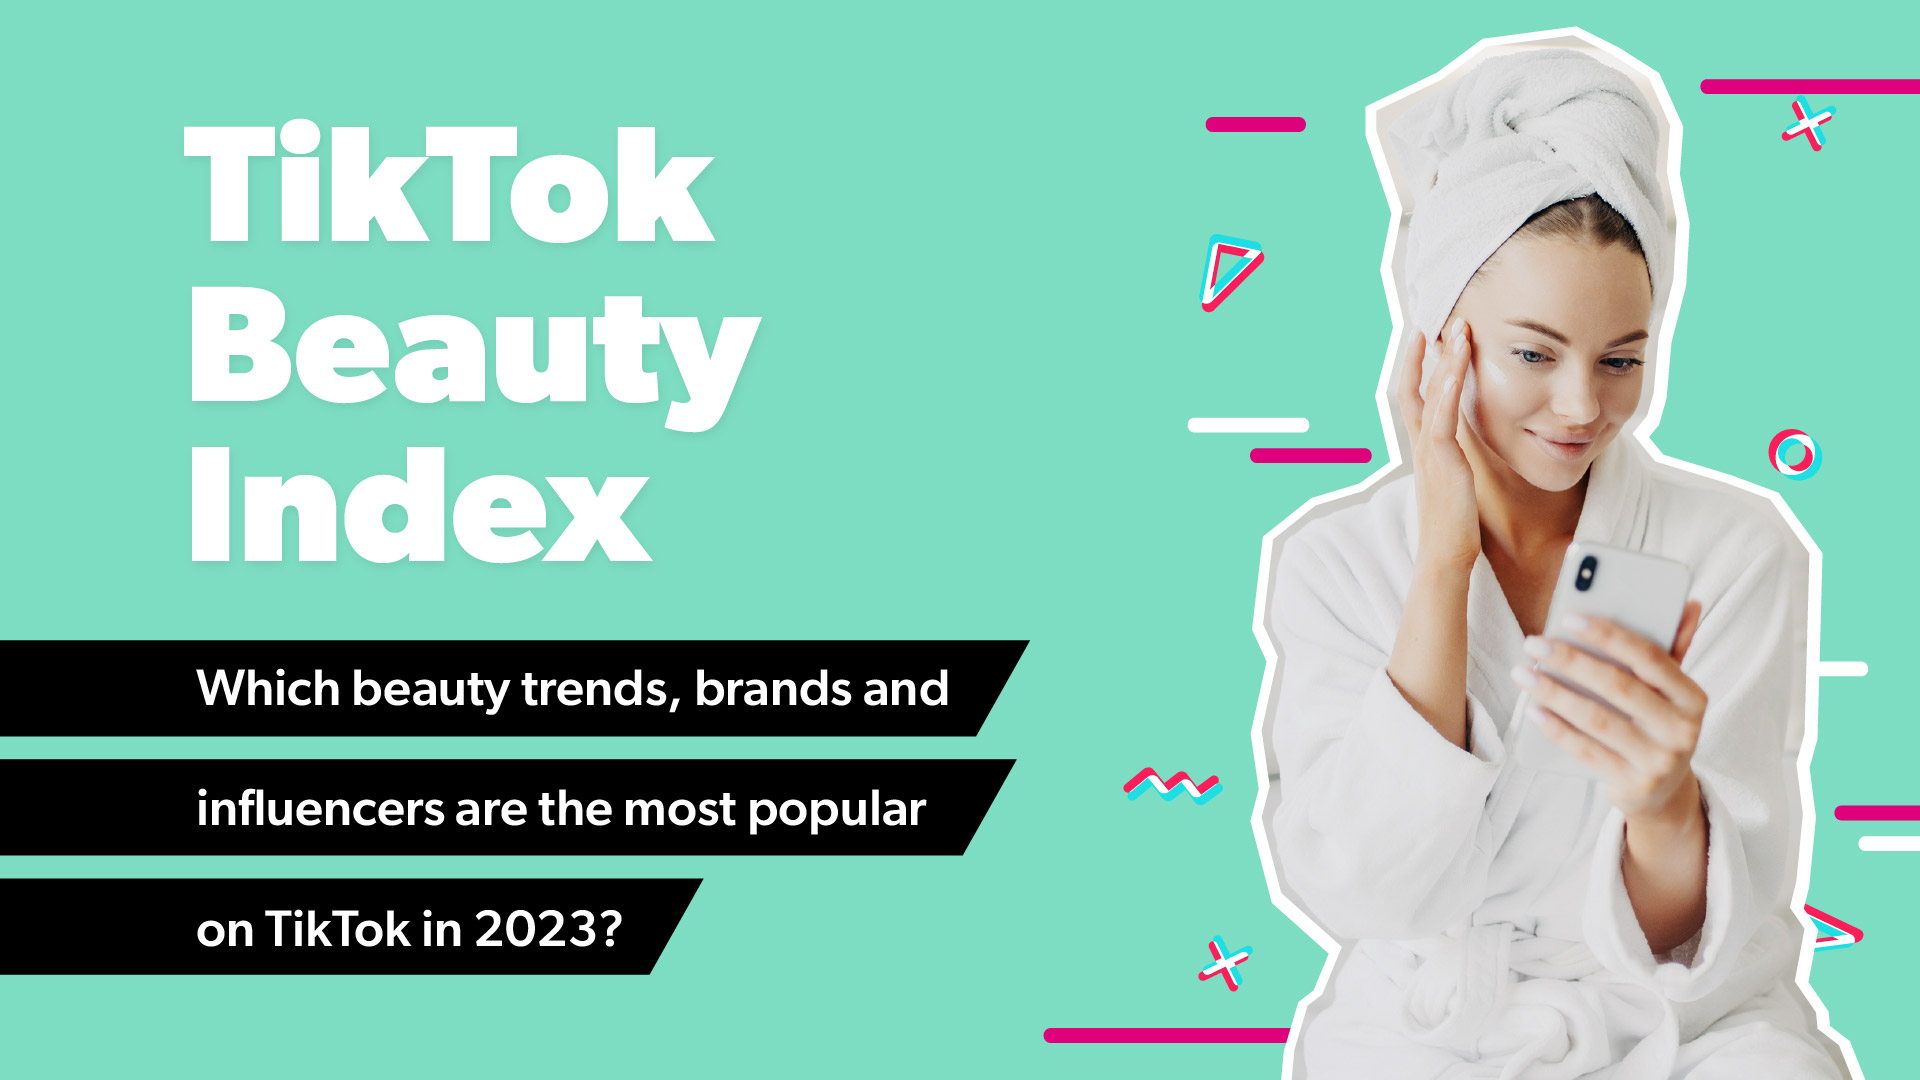 TikTok Beauty Index